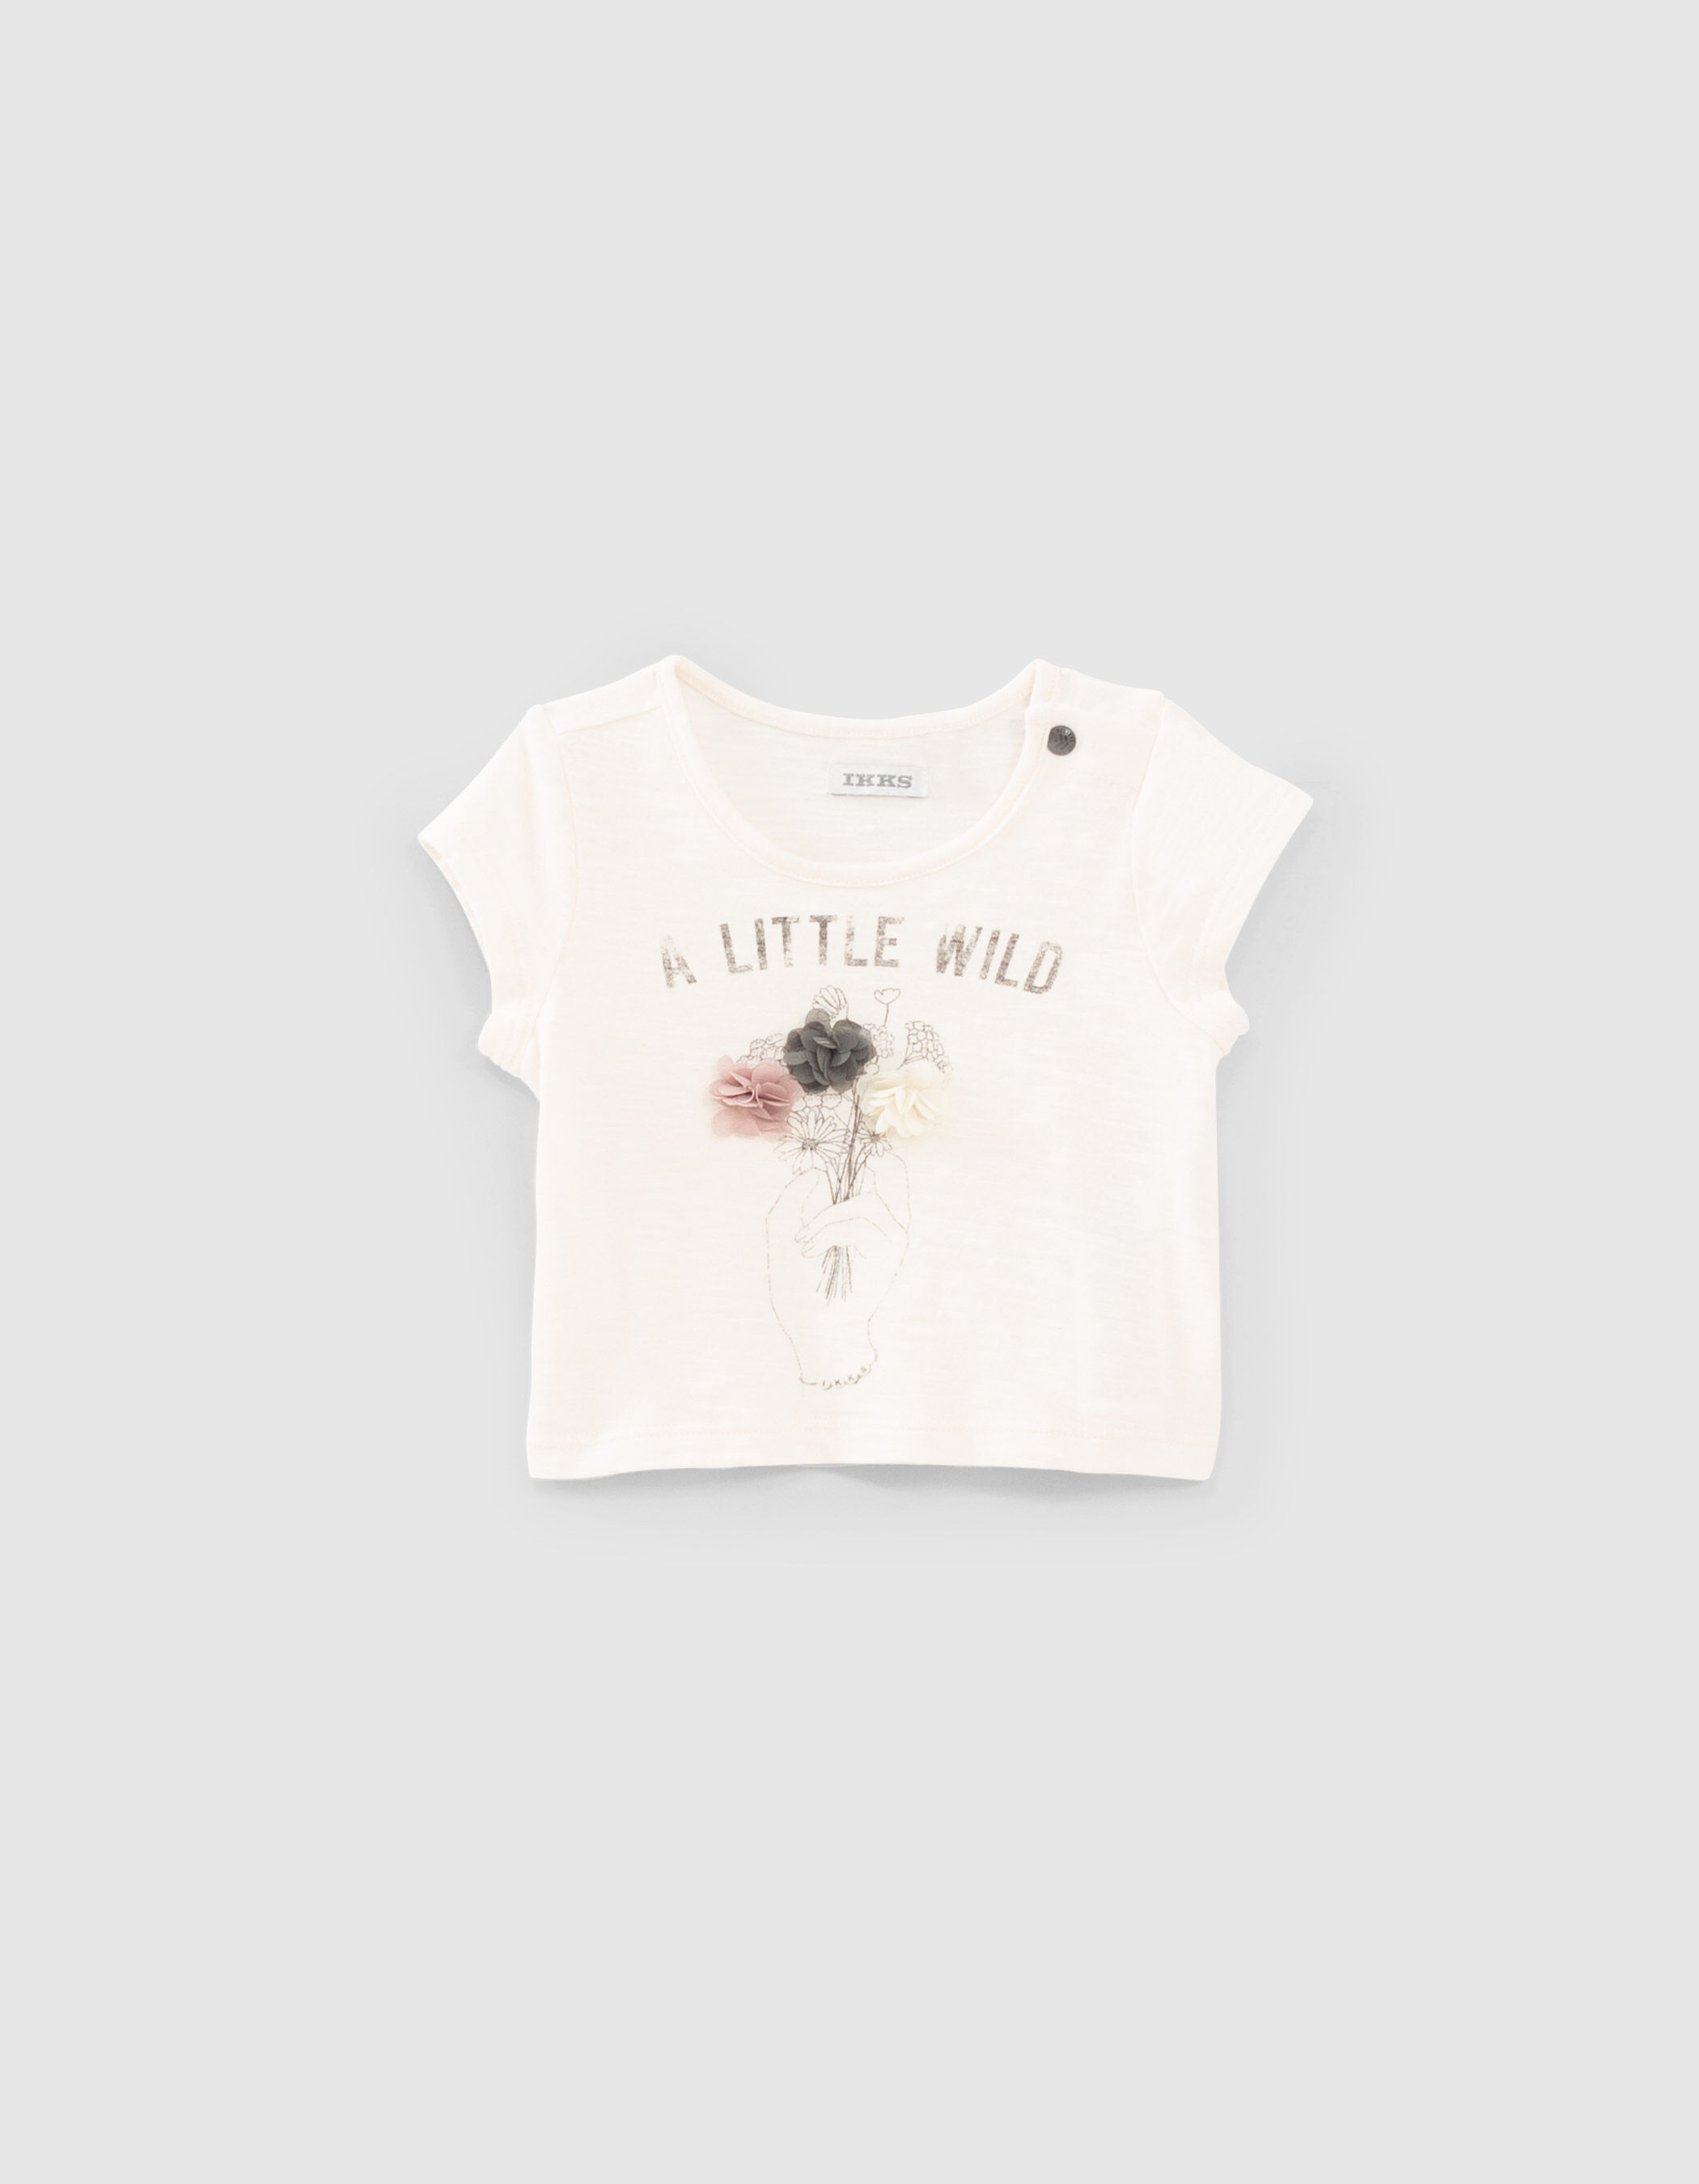 KINDER Hemden & T-Shirts Stickerei Weiß 13Y Zara T-Shirt Rabatt 66 % 